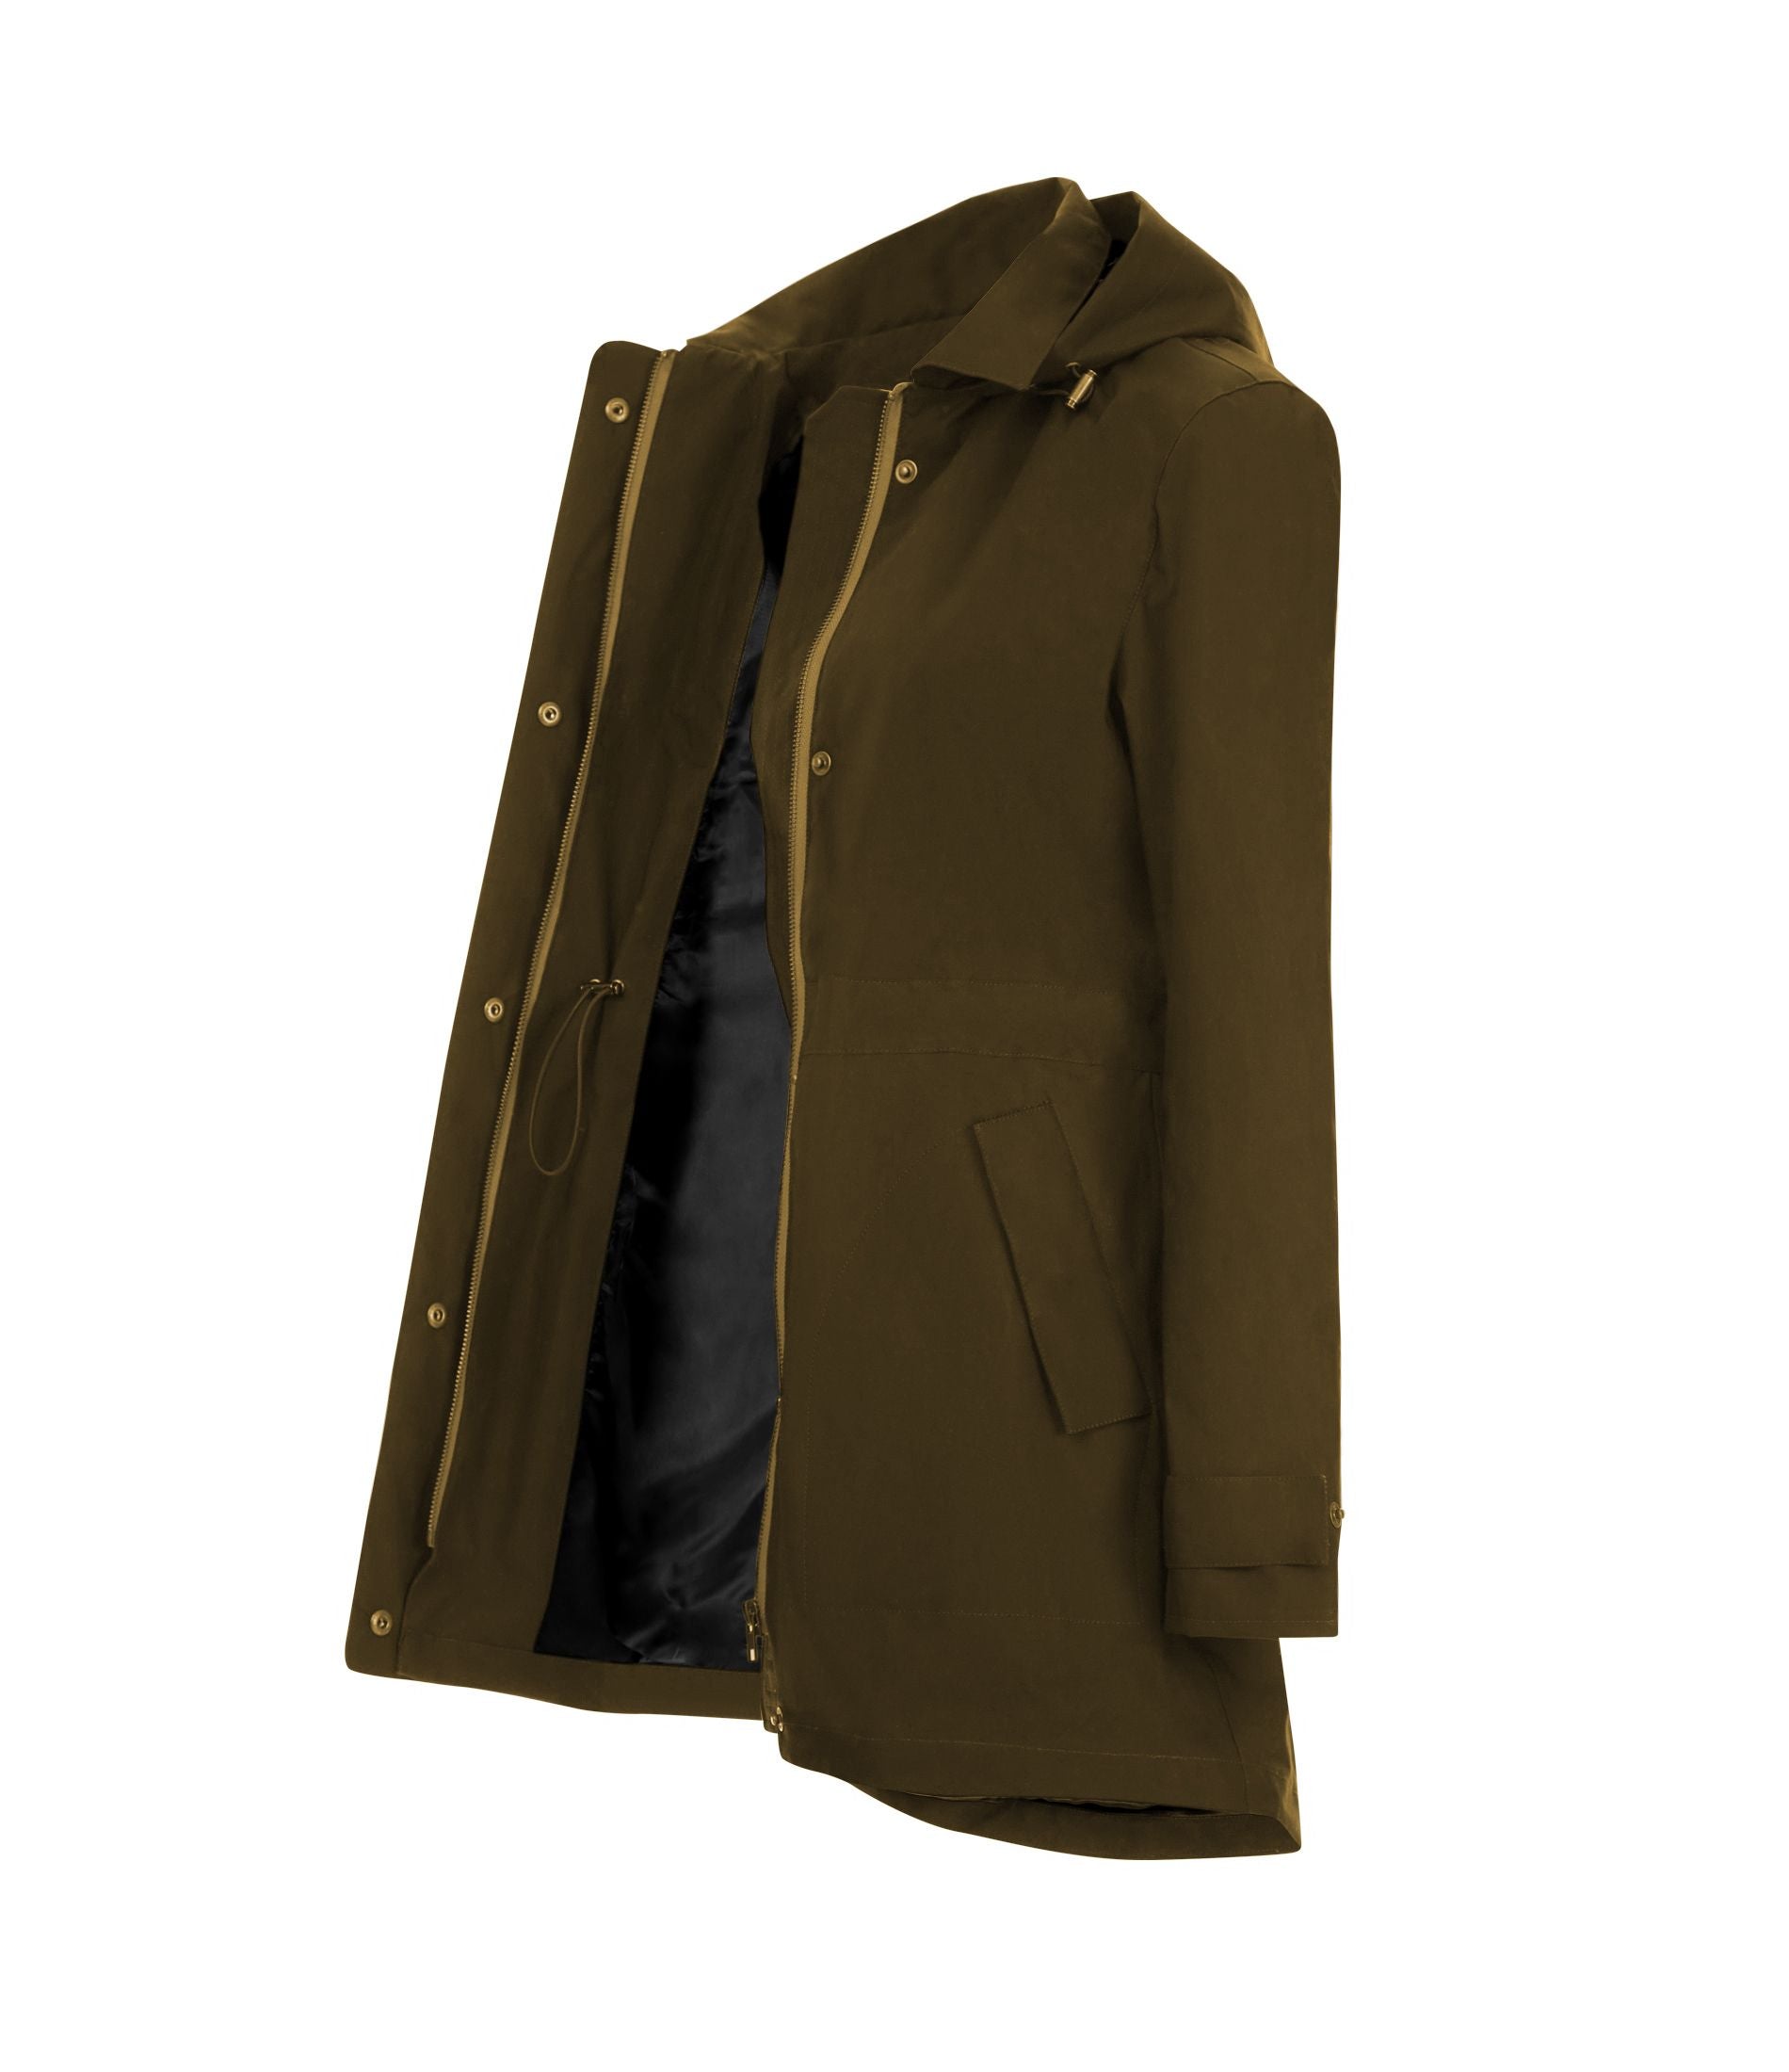 Lightweight waterproof Ladies Wax Jacket Coat in Olive Green